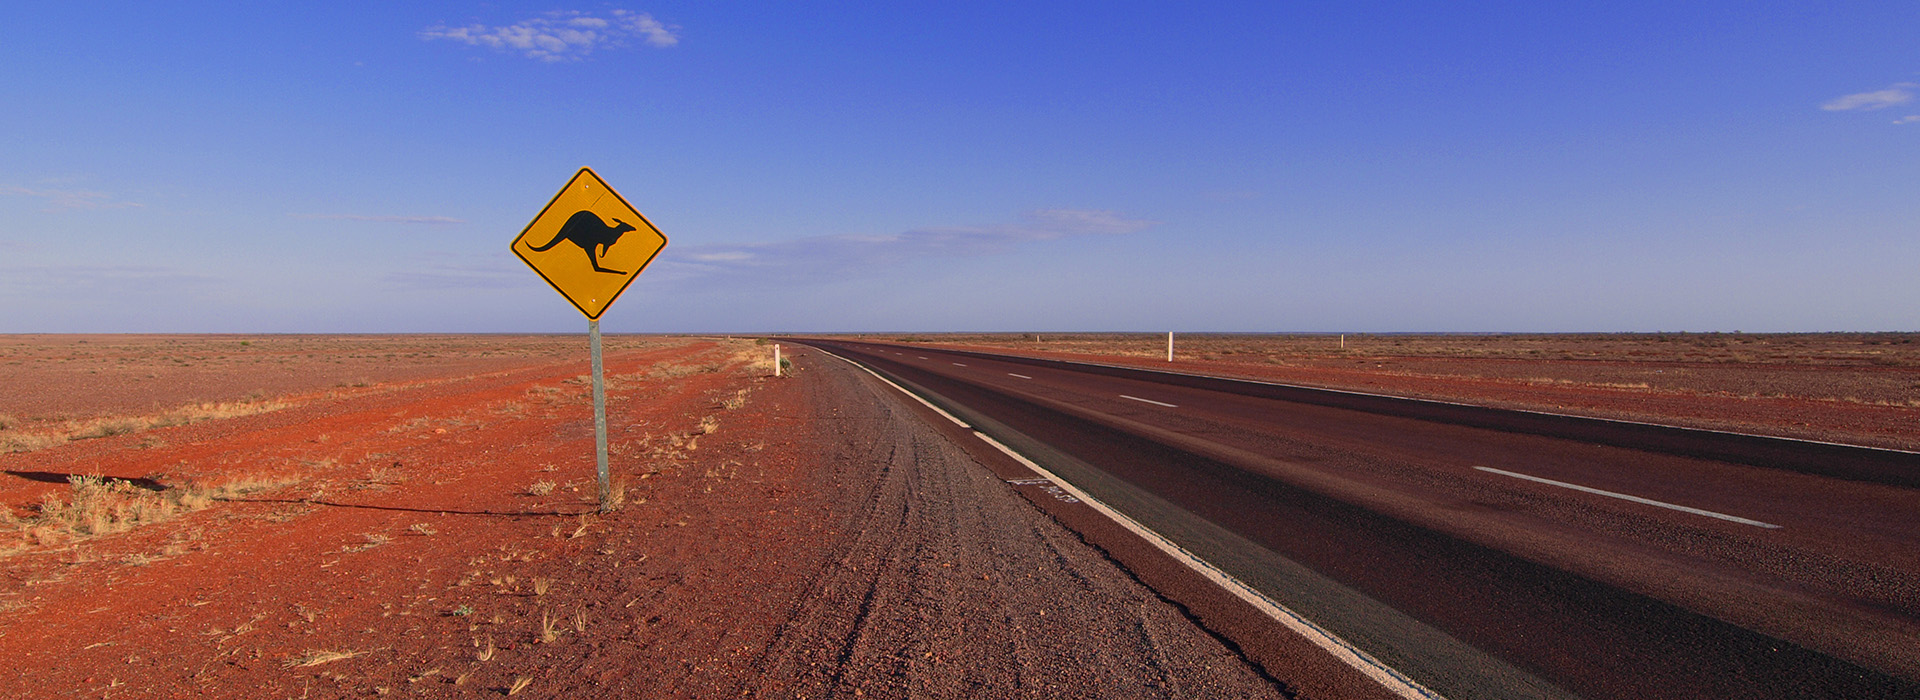 Remote outback road in Australia